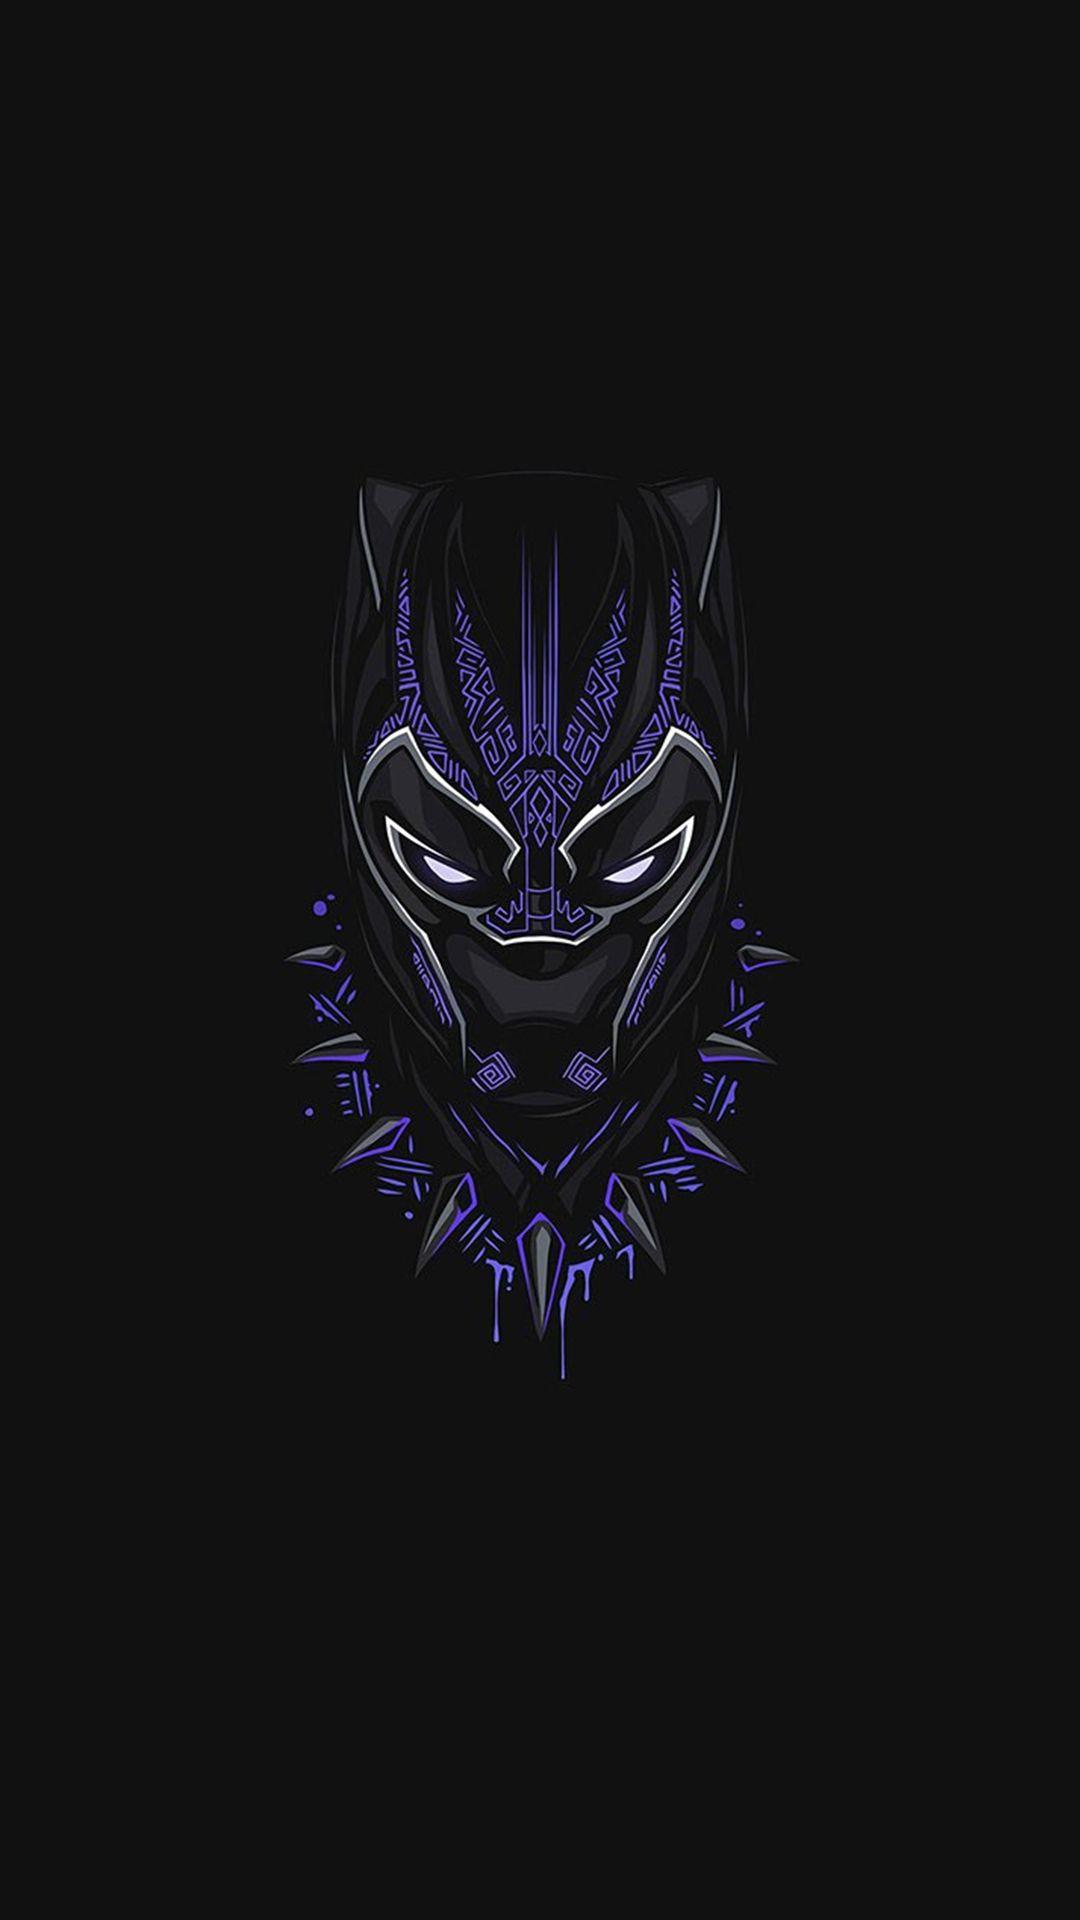 Black Panther Purple Minimal iPhone Wallpaper. Black panther art